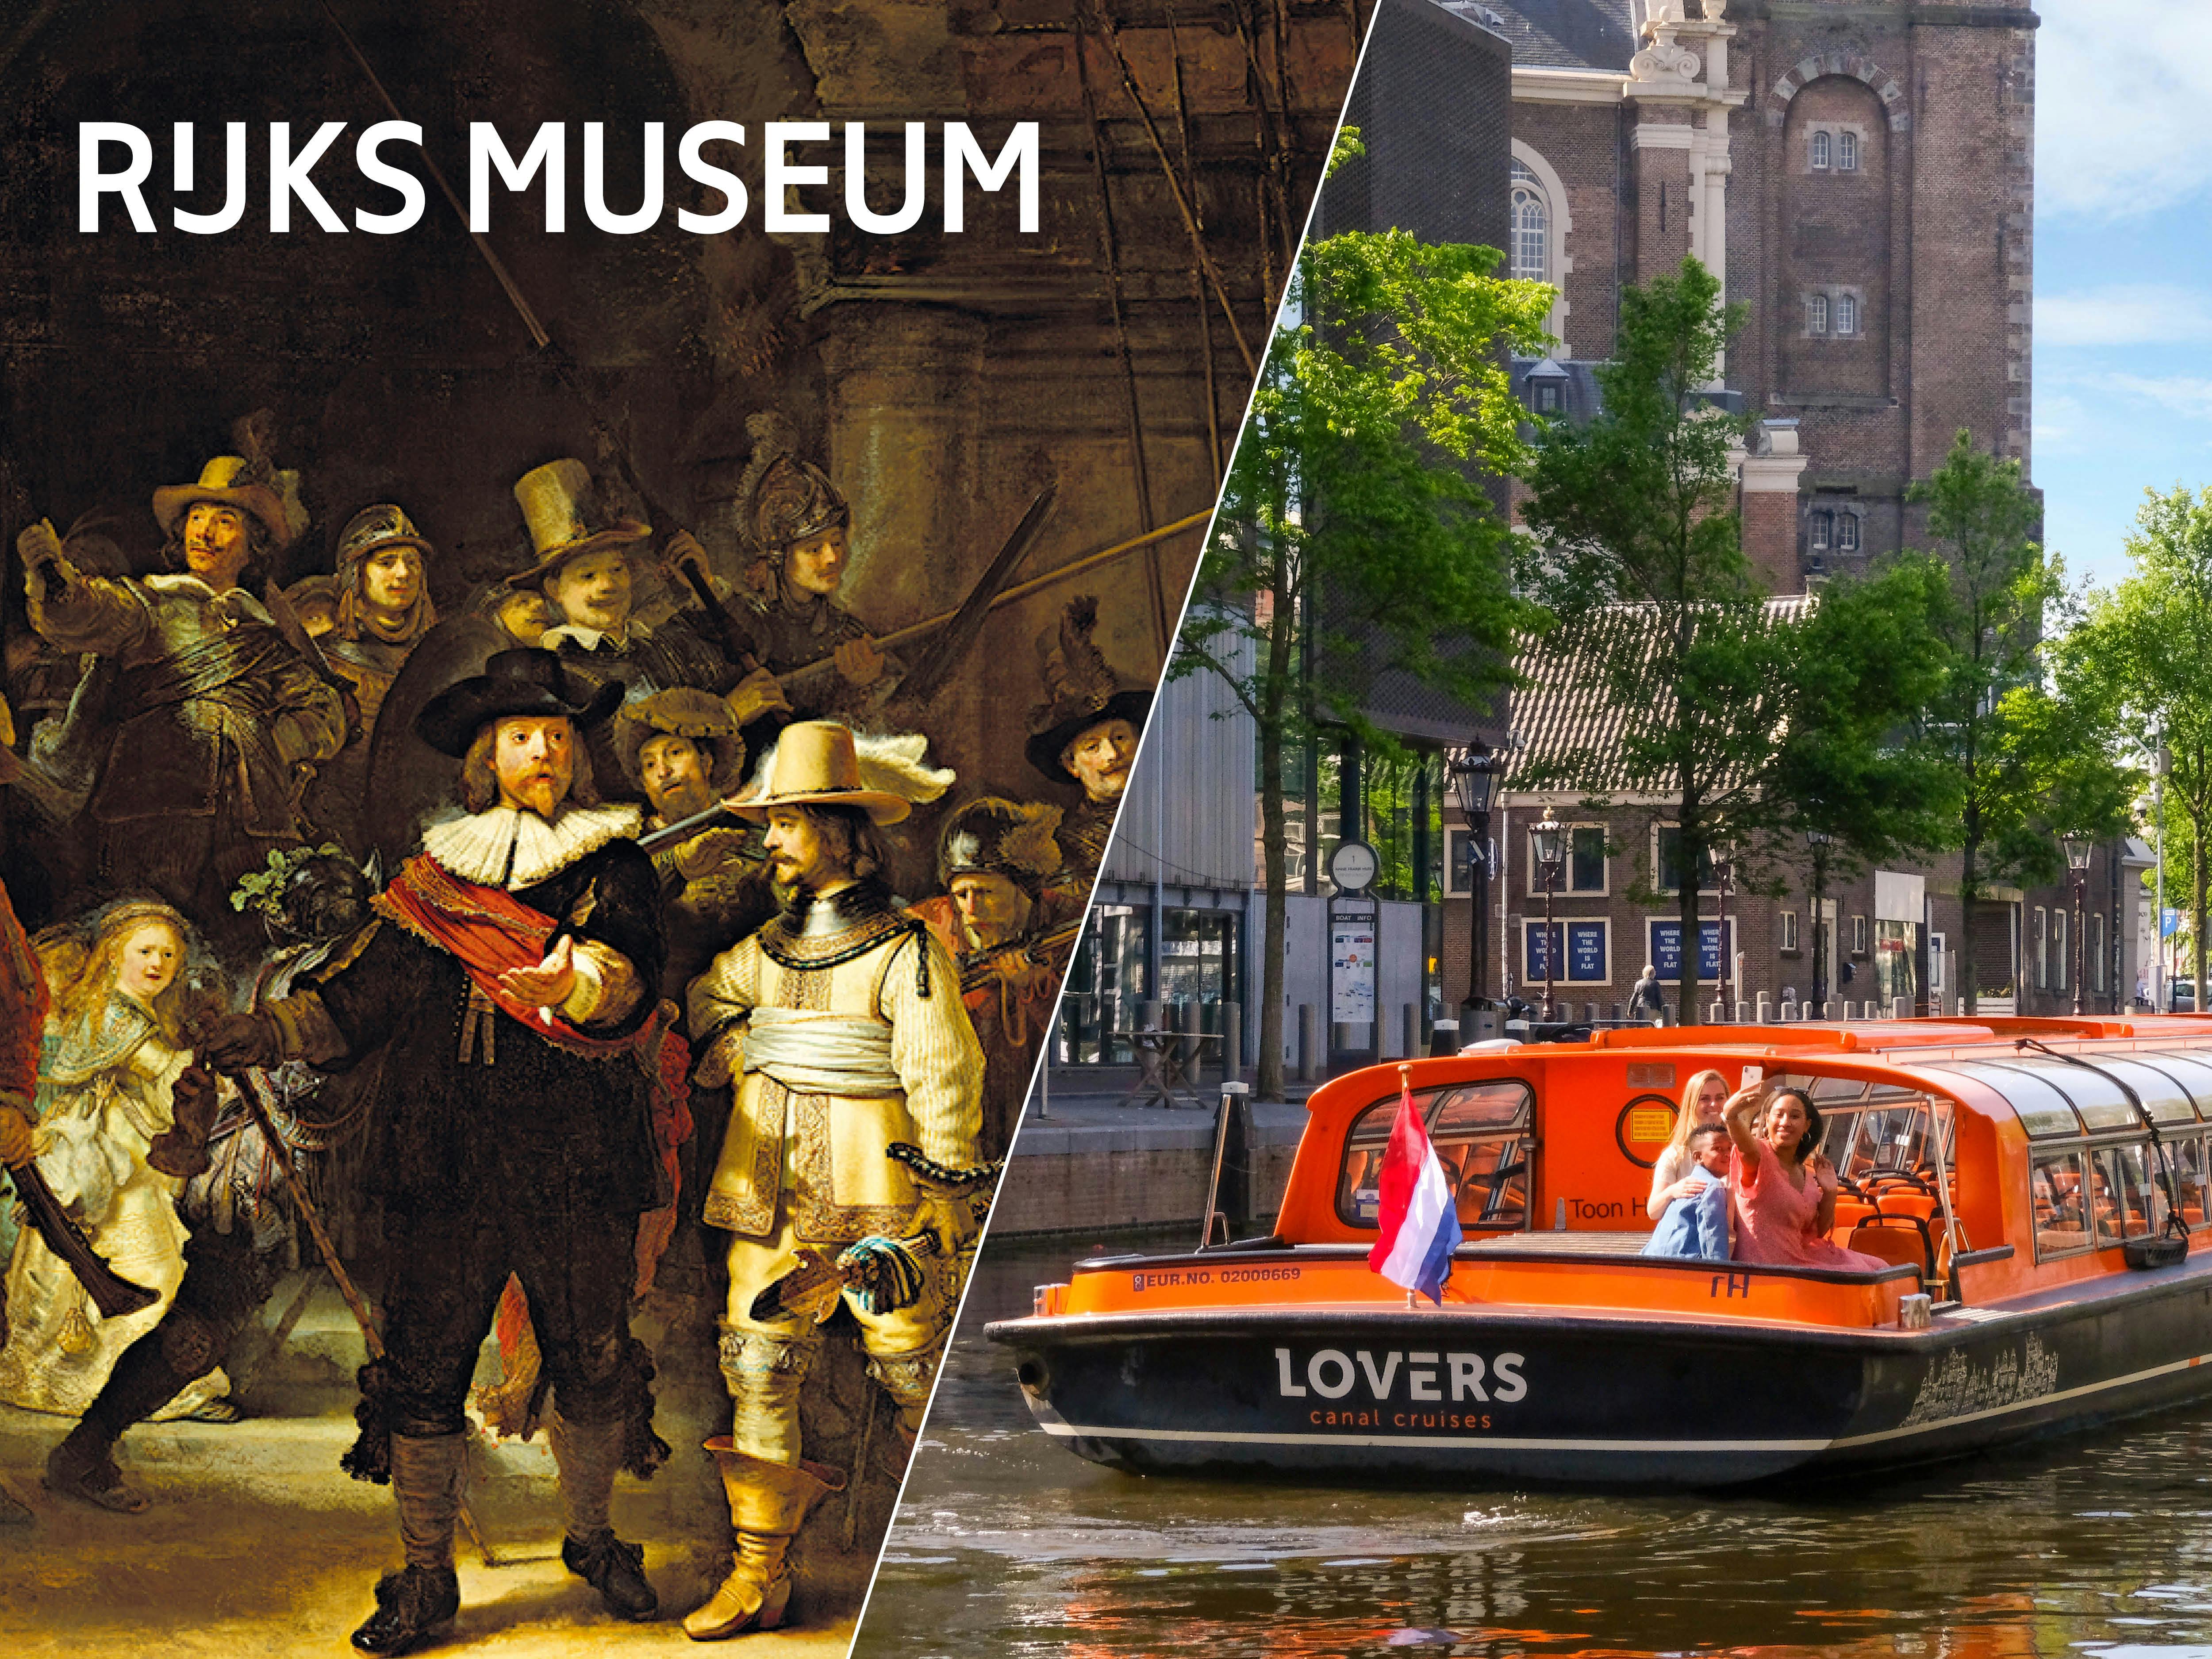 Billet prioritaire pour le Rijksmuseum et croisière sur les canaux